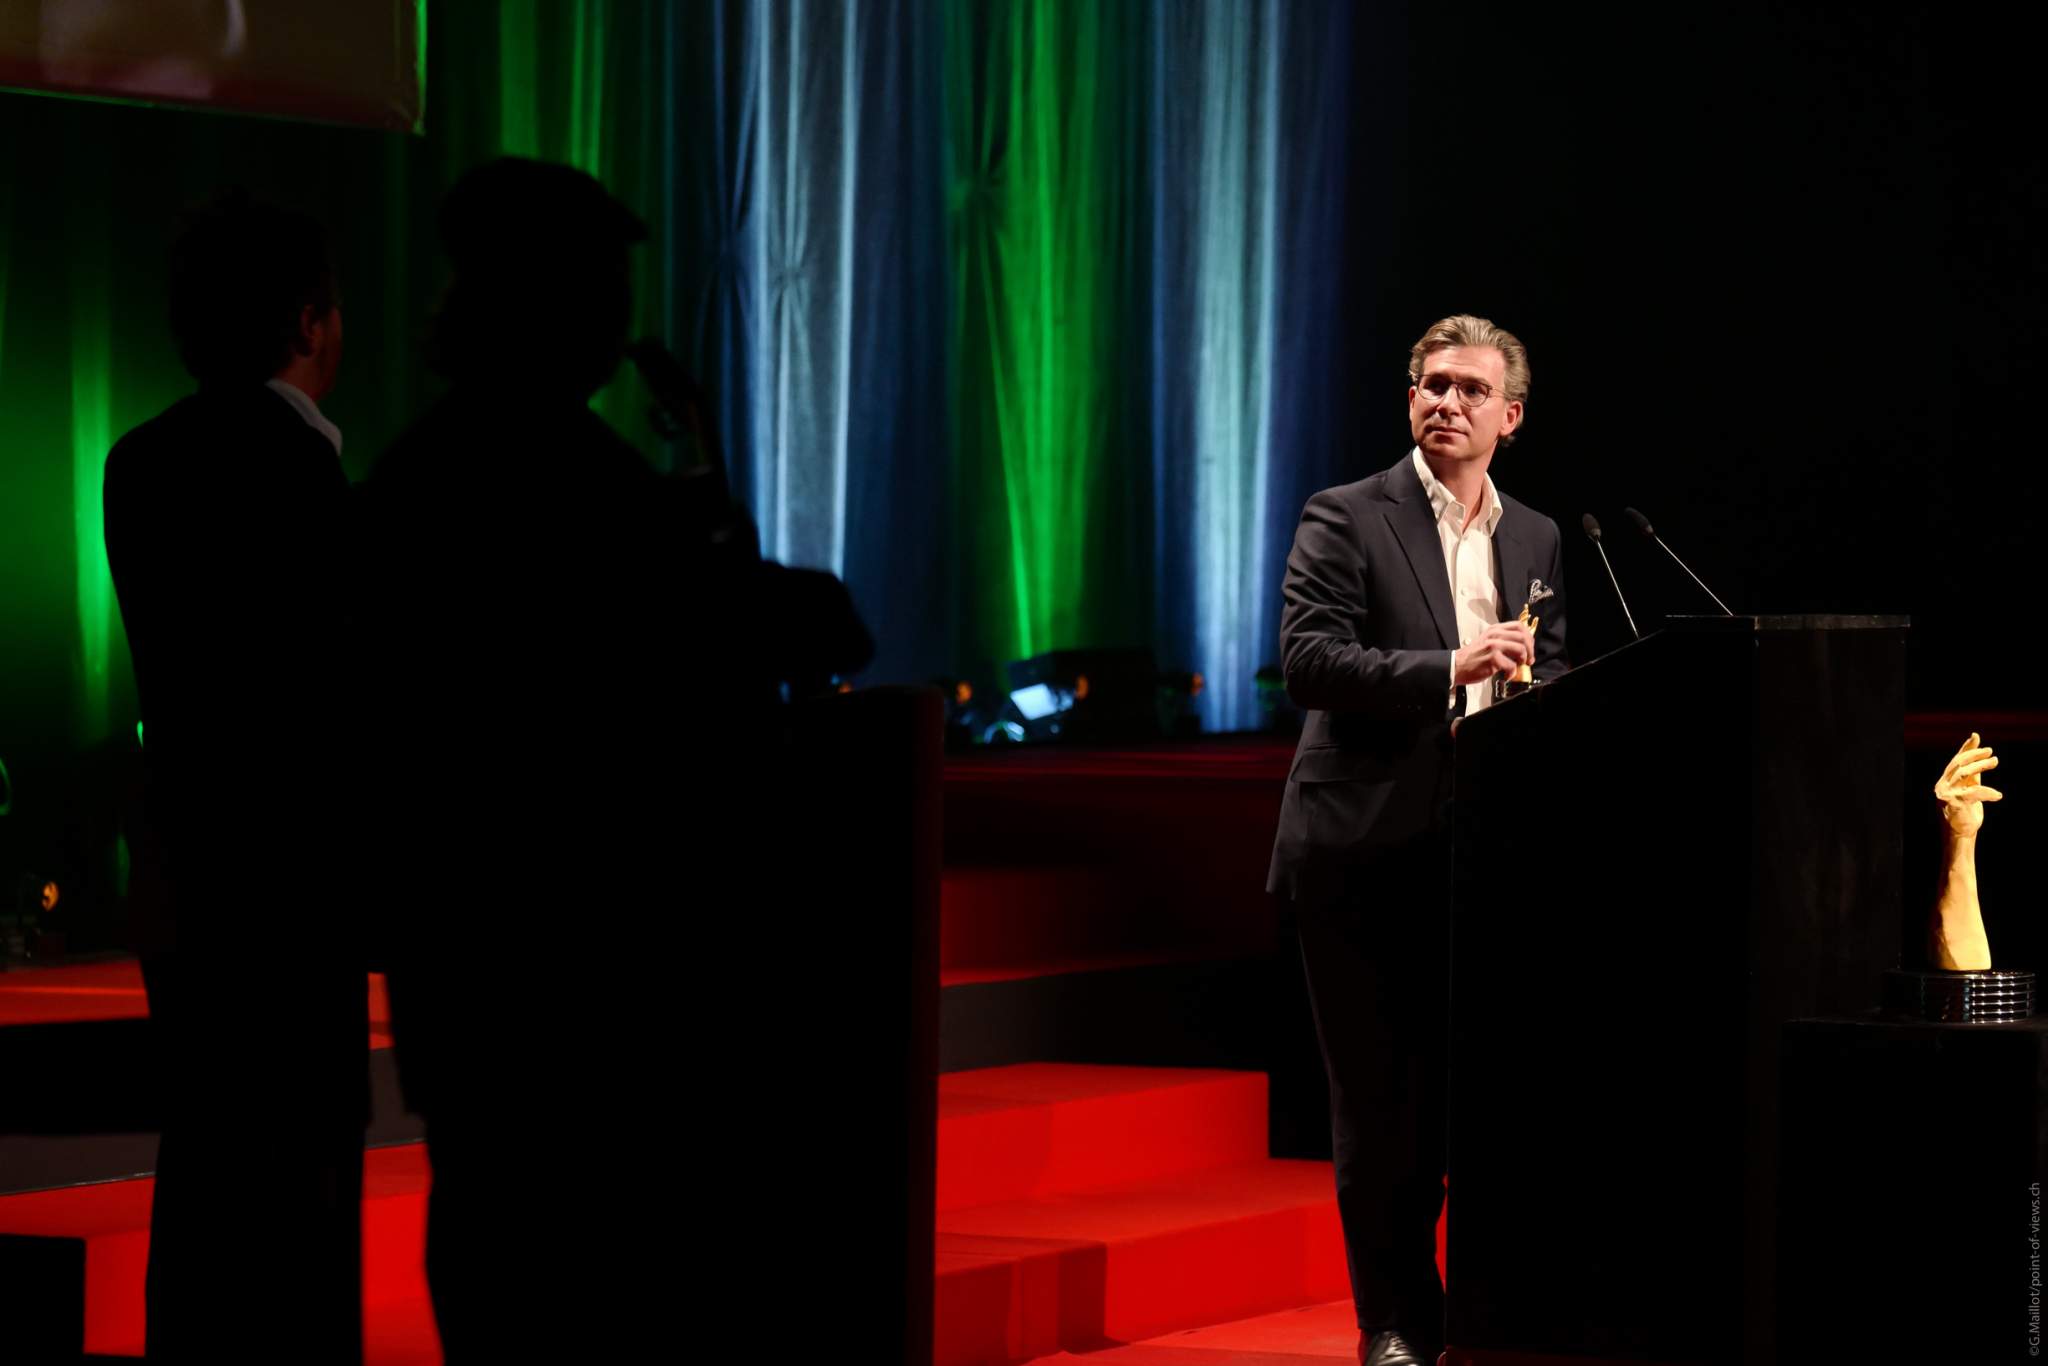 Louis Ferla, CEO de Vacheron Constantin, lauréat du Prix de la Montre Calendrier et Astronomie 2020